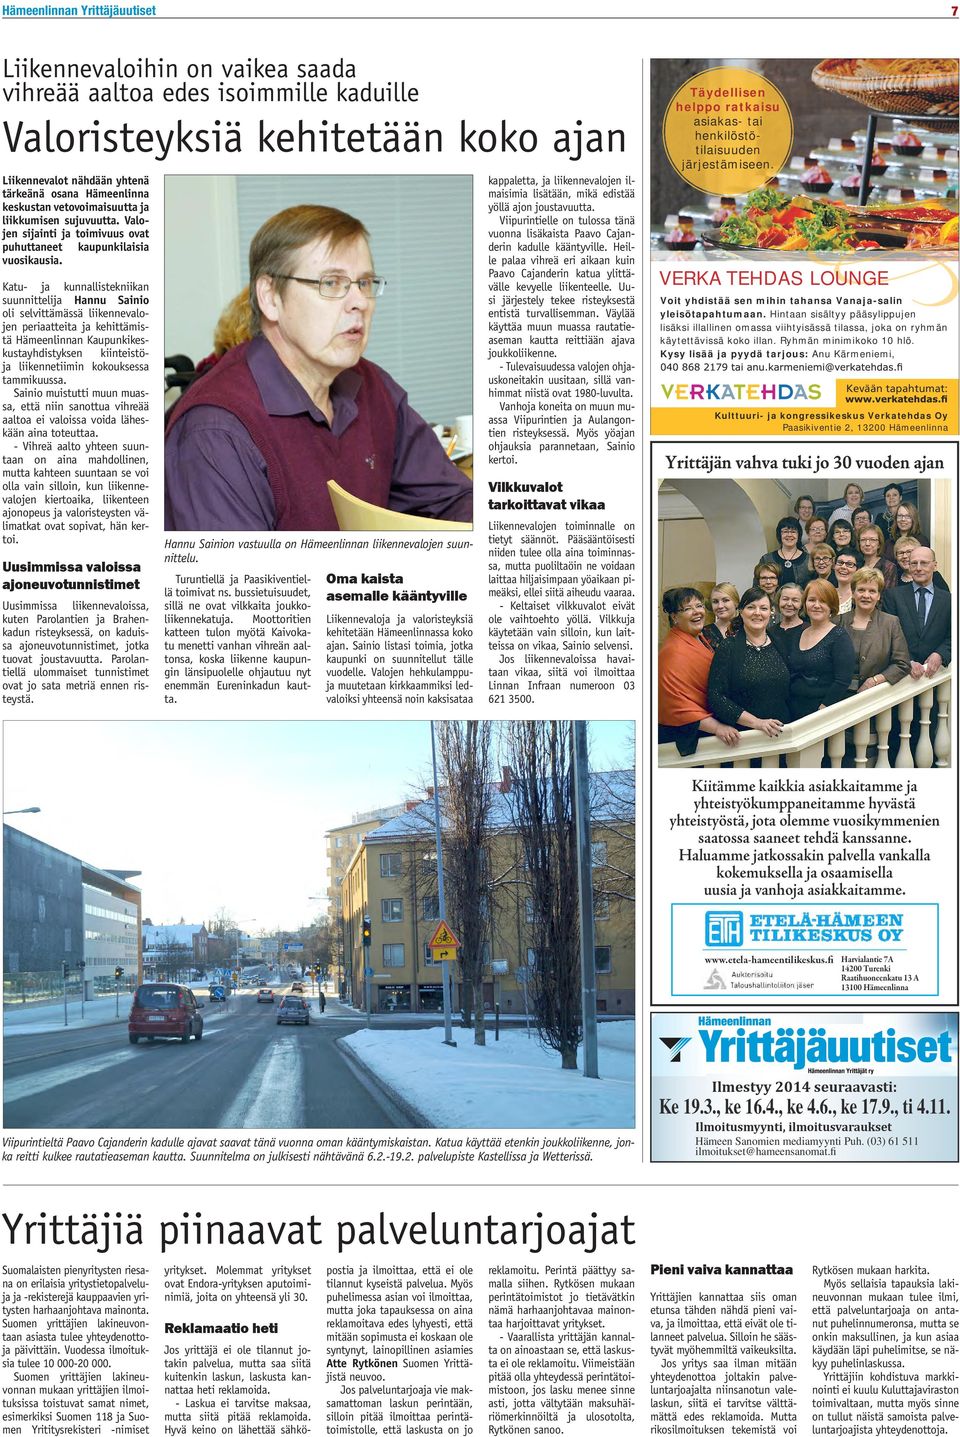 Katu- ja kunnallistekniikan suunnittelija Hannu Sainio oli selvittämässä liikennevalojen periaatteita ja kehittämistä Hämeenlinnan Kaupunkikeskustayhdistyksen kiinteistöja liikennetiimin kokouksessa